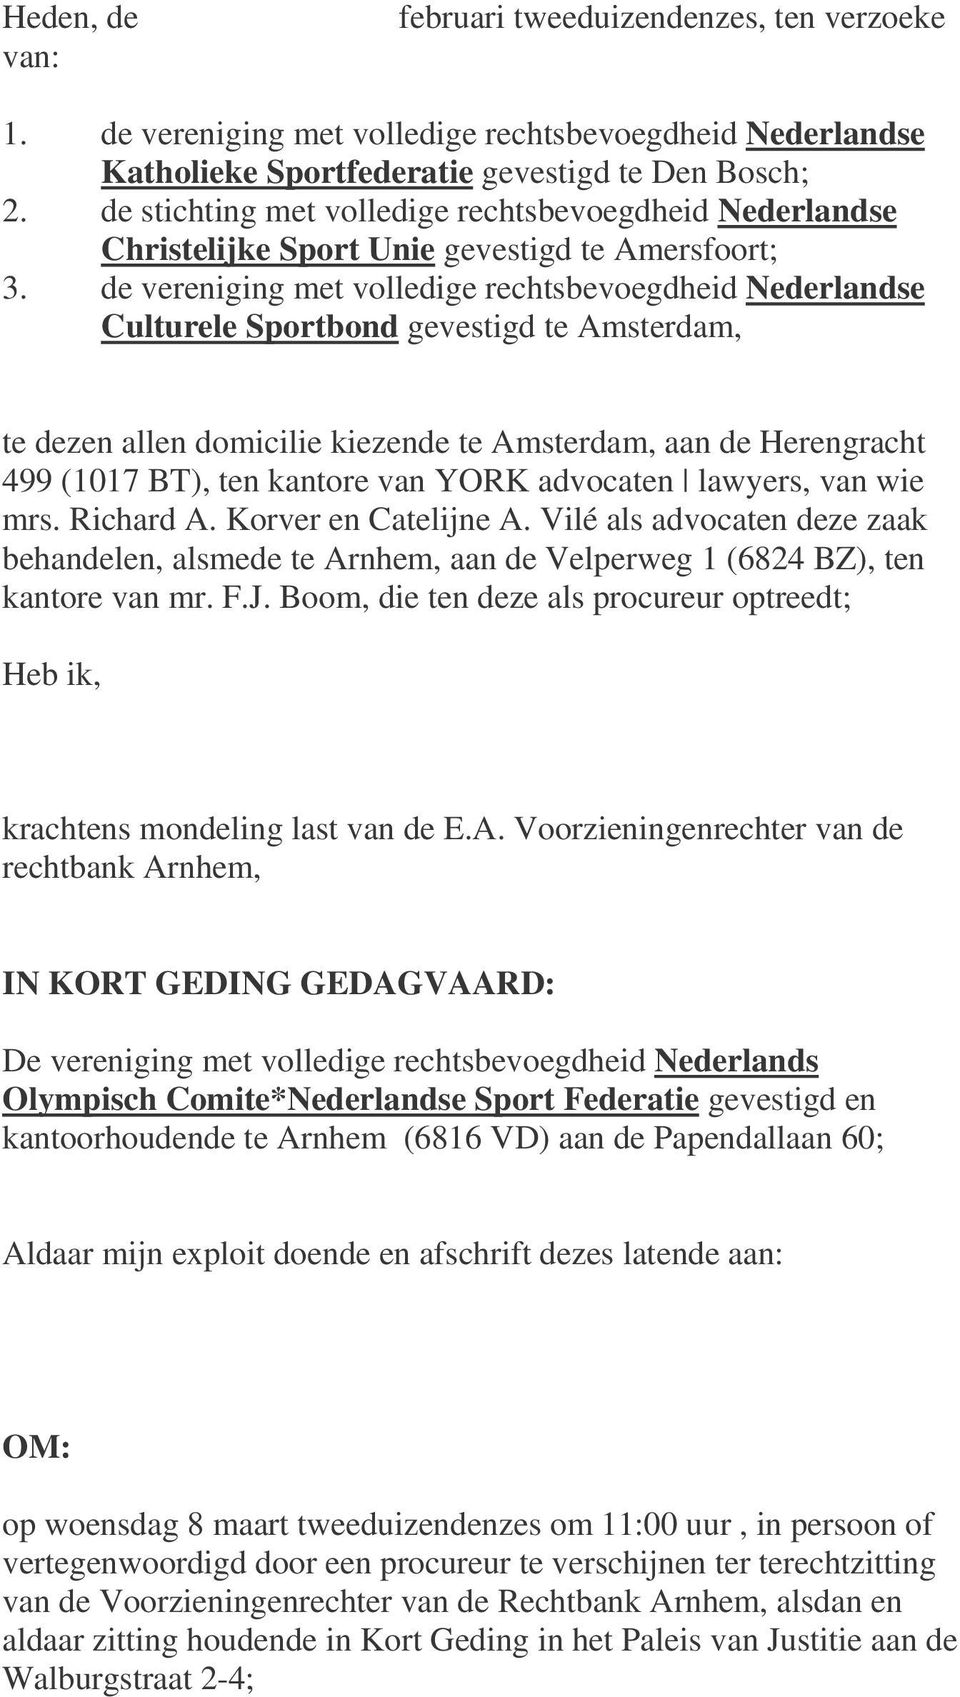 de vereniging met volledige rechtsbevoegdheid Nederlandse Culturele Sportbond gevestigd te Amsterdam, te dezen allen domicilie kiezende te Amsterdam, aan de Herengracht 499 (1017 BT), ten kantore van